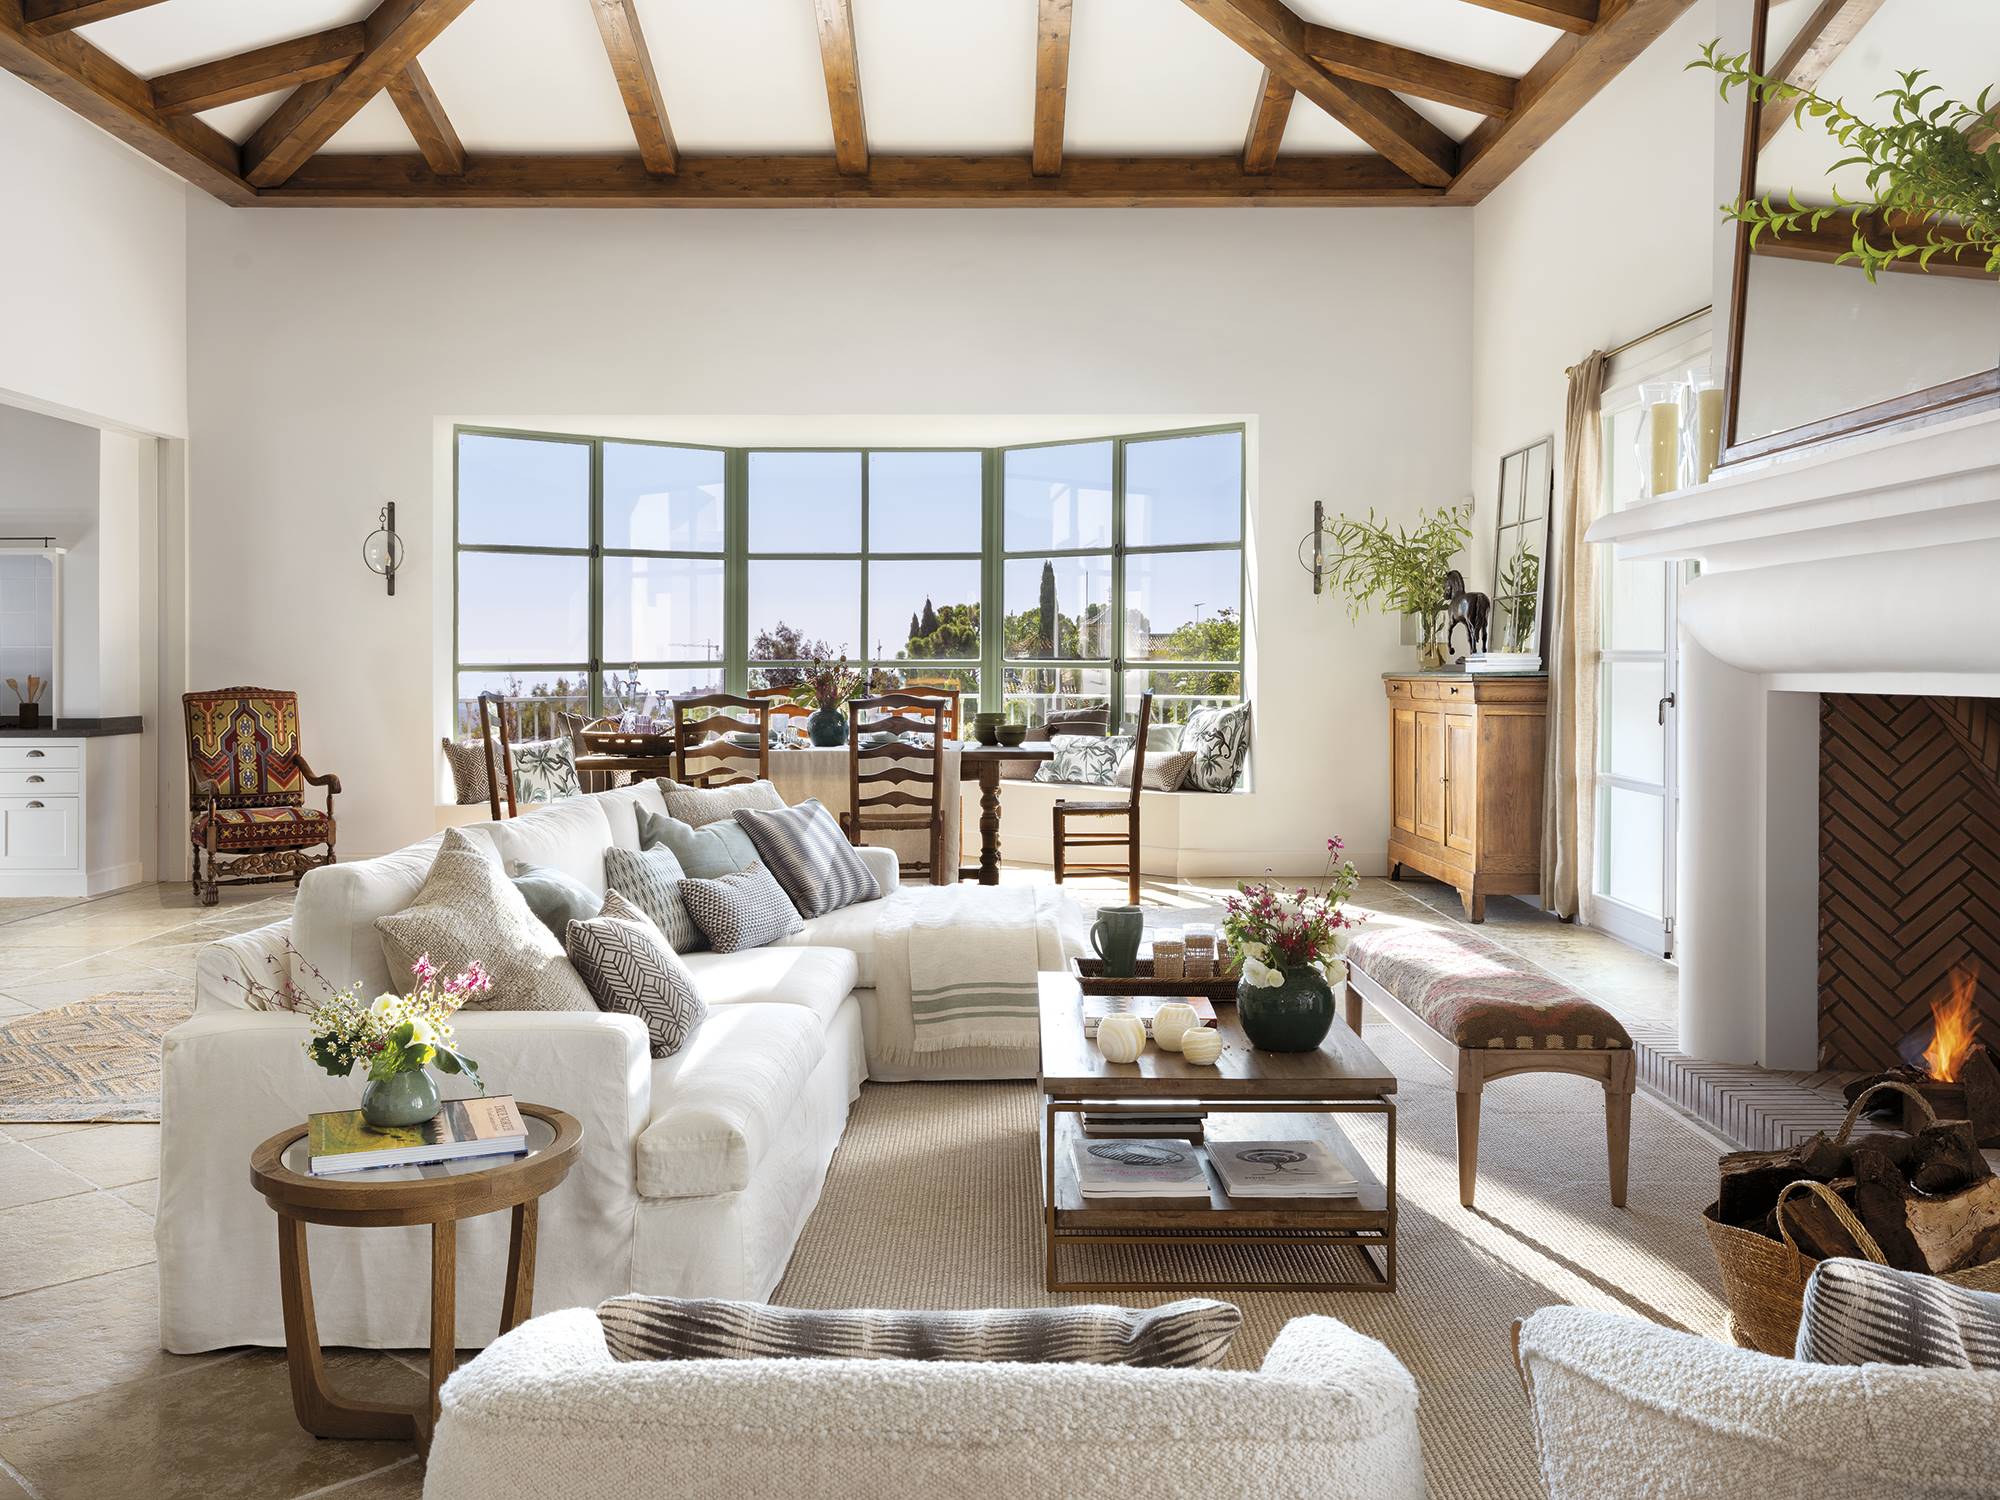 Salón clásico con vigas en el techo, ventanal verde con banco, chimenea, sofá con chaise longue blanco y alfombra.